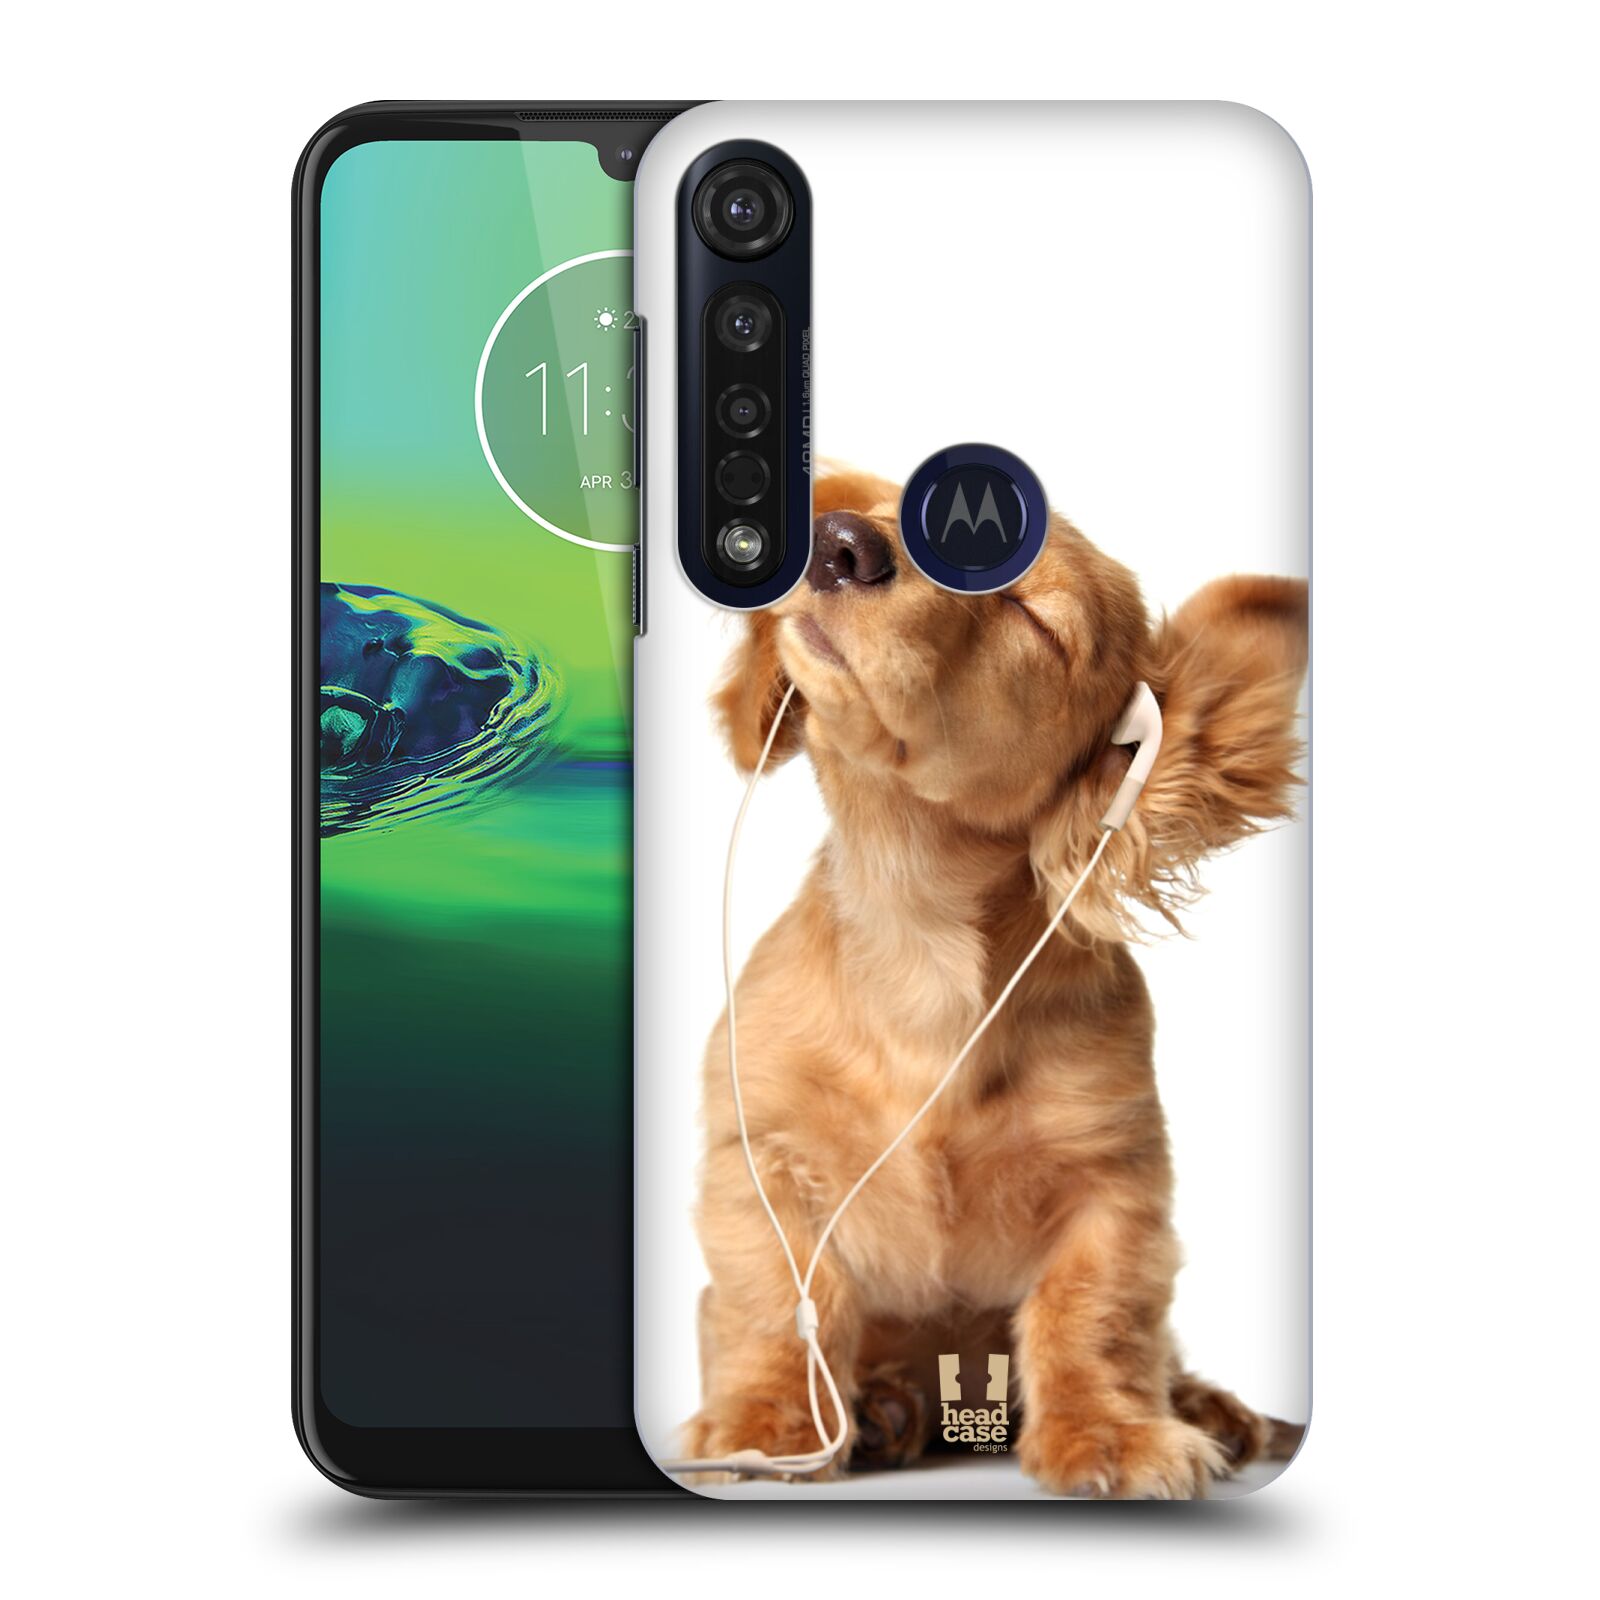 Pouzdro na mobil Motorola Moto G8 PLUS - HEAD CASE - vzor Legrační zvířátka roztomilé štěňátko se sluchátky MUSIC